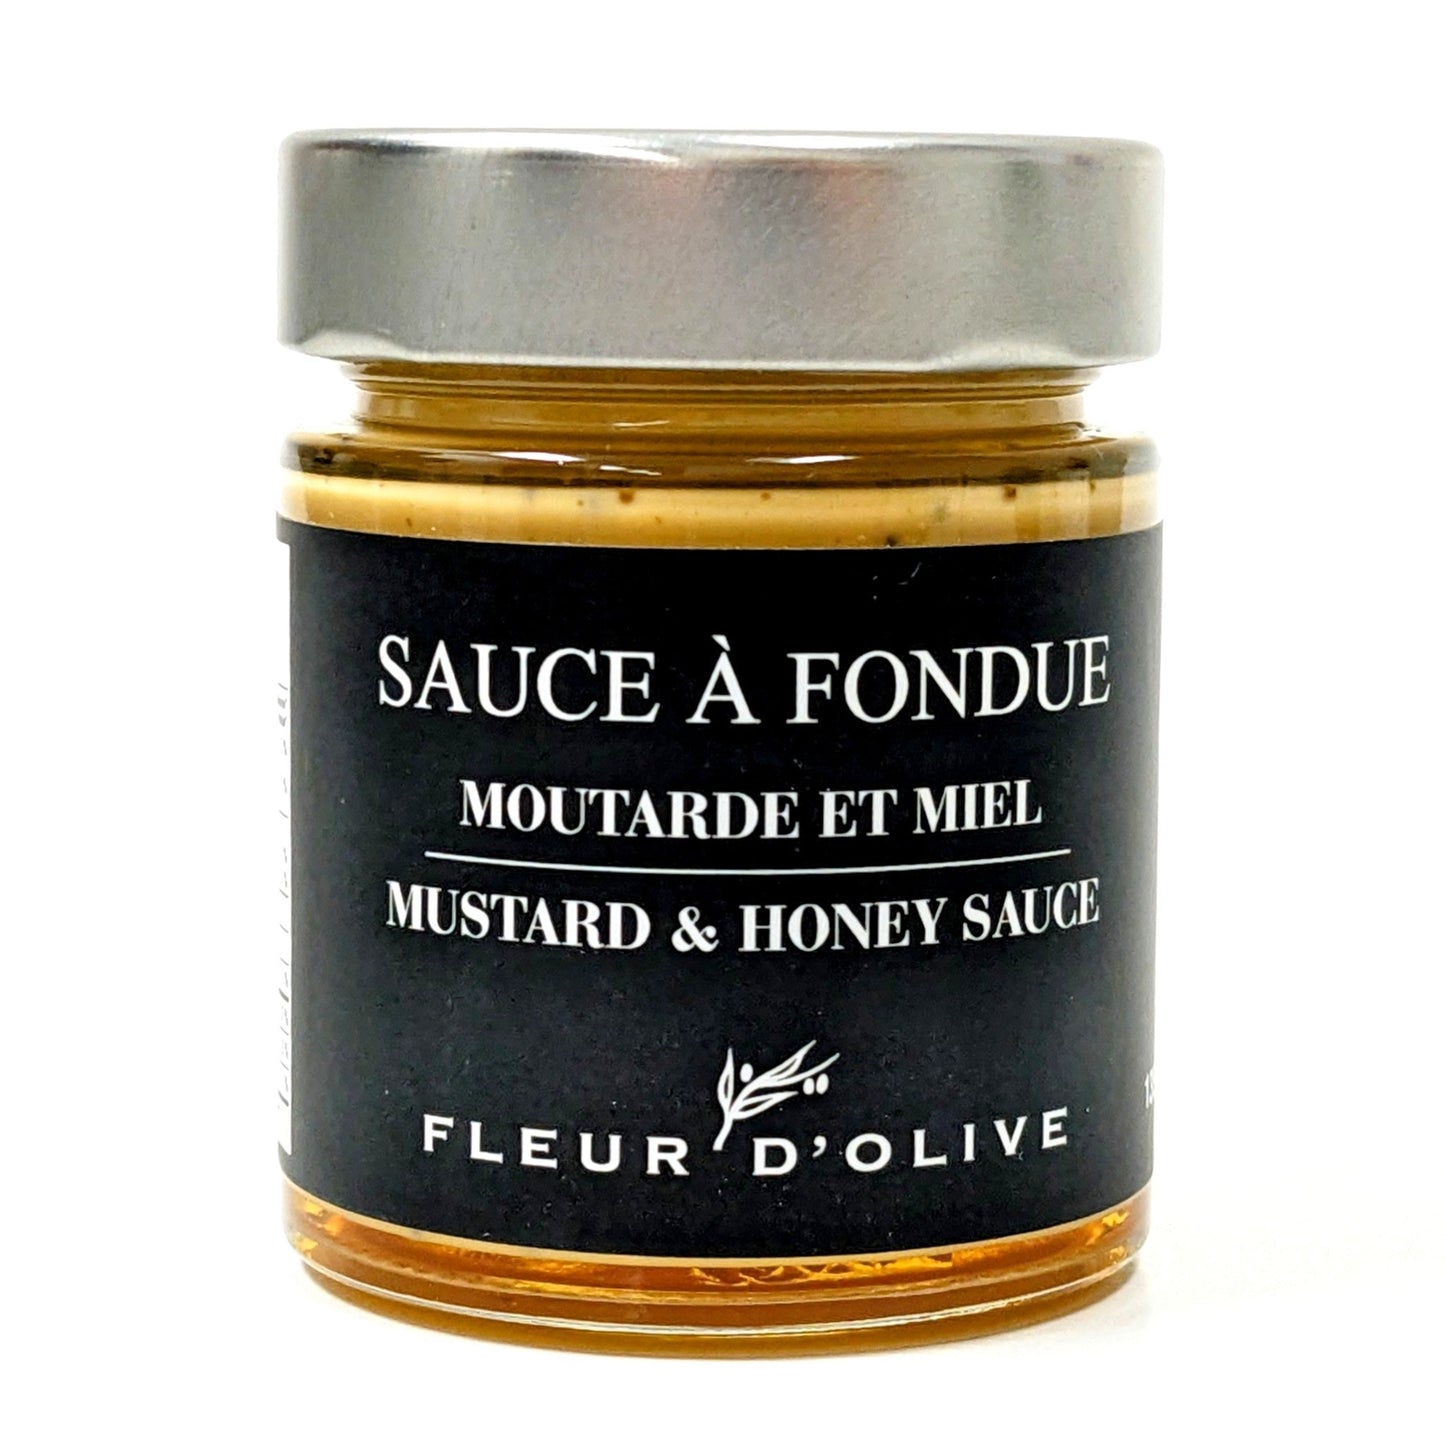 Sauce à fondue Moutarde et miel - Fleur d'Olive